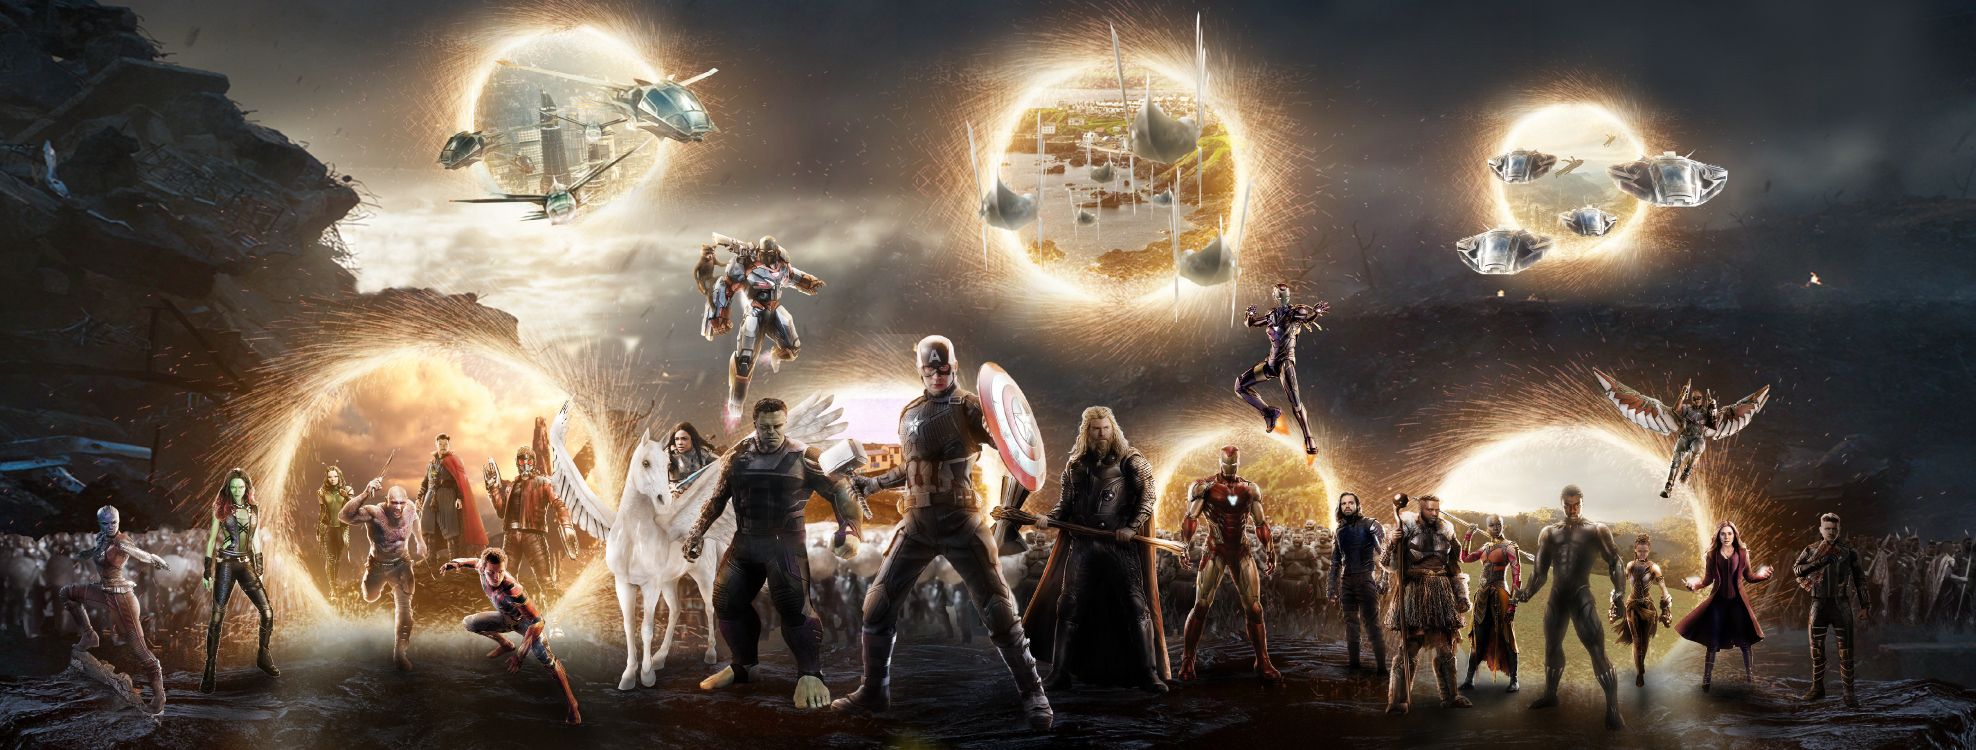 Vengadores Unidos, Capitán América, Thanos, Iron Man, Vengadores. Wallpaper in 6481x2459 Resolution